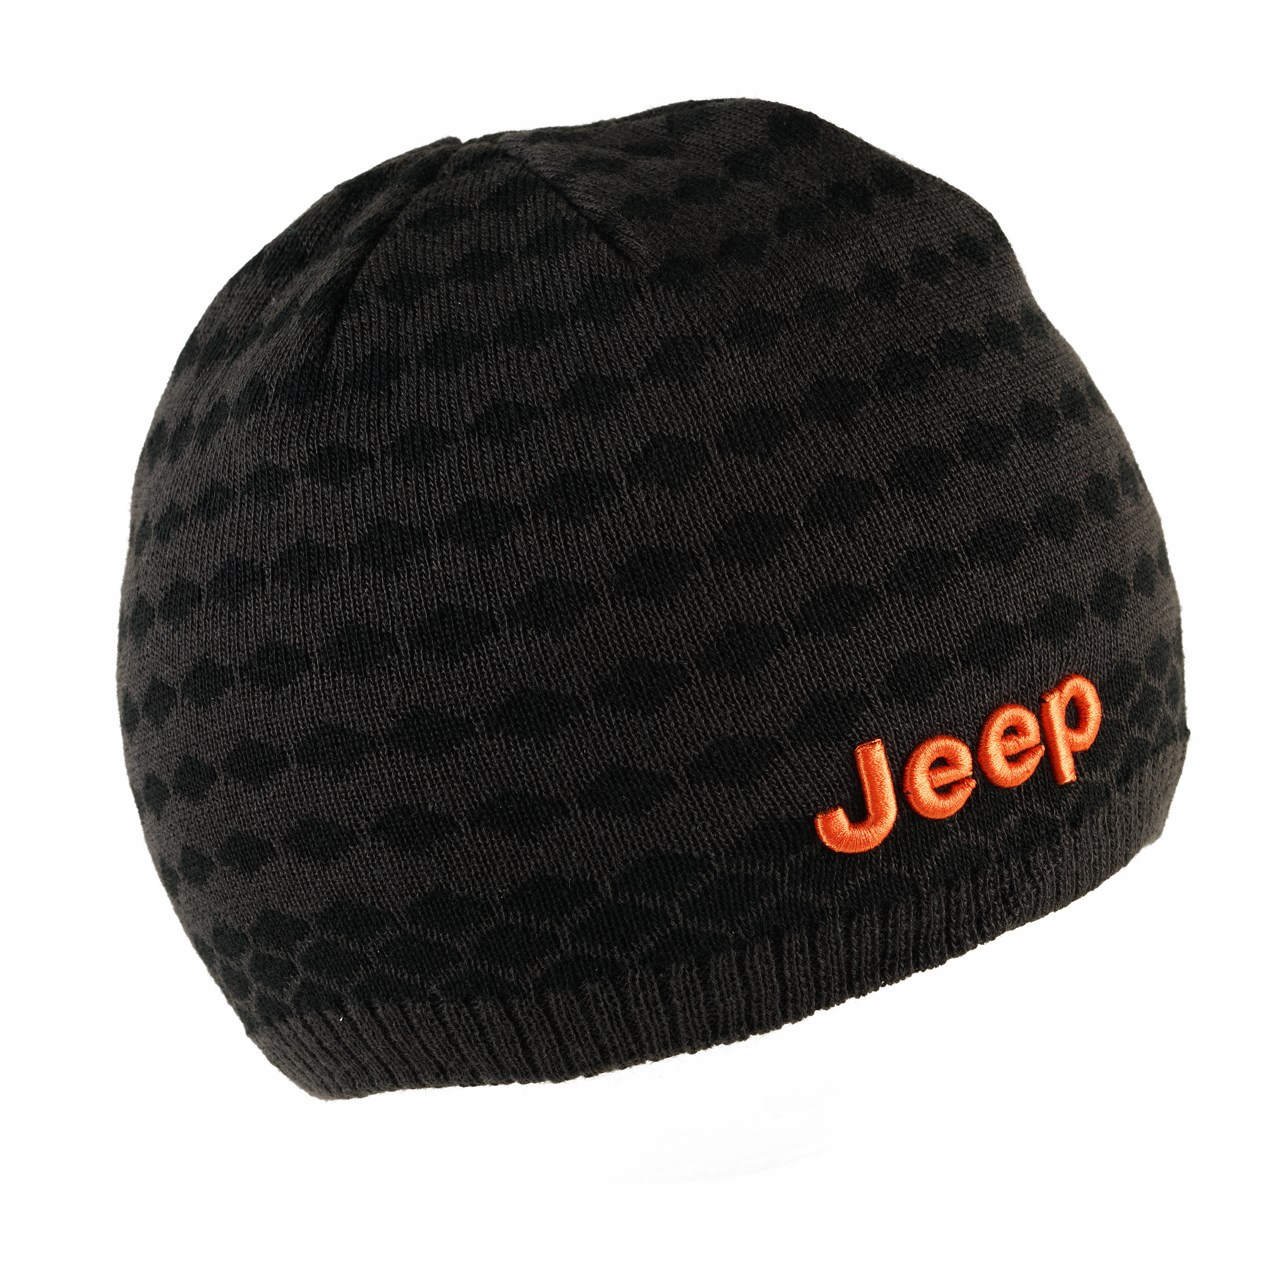 کلاه بافتنی جیپ مدل Jeep586